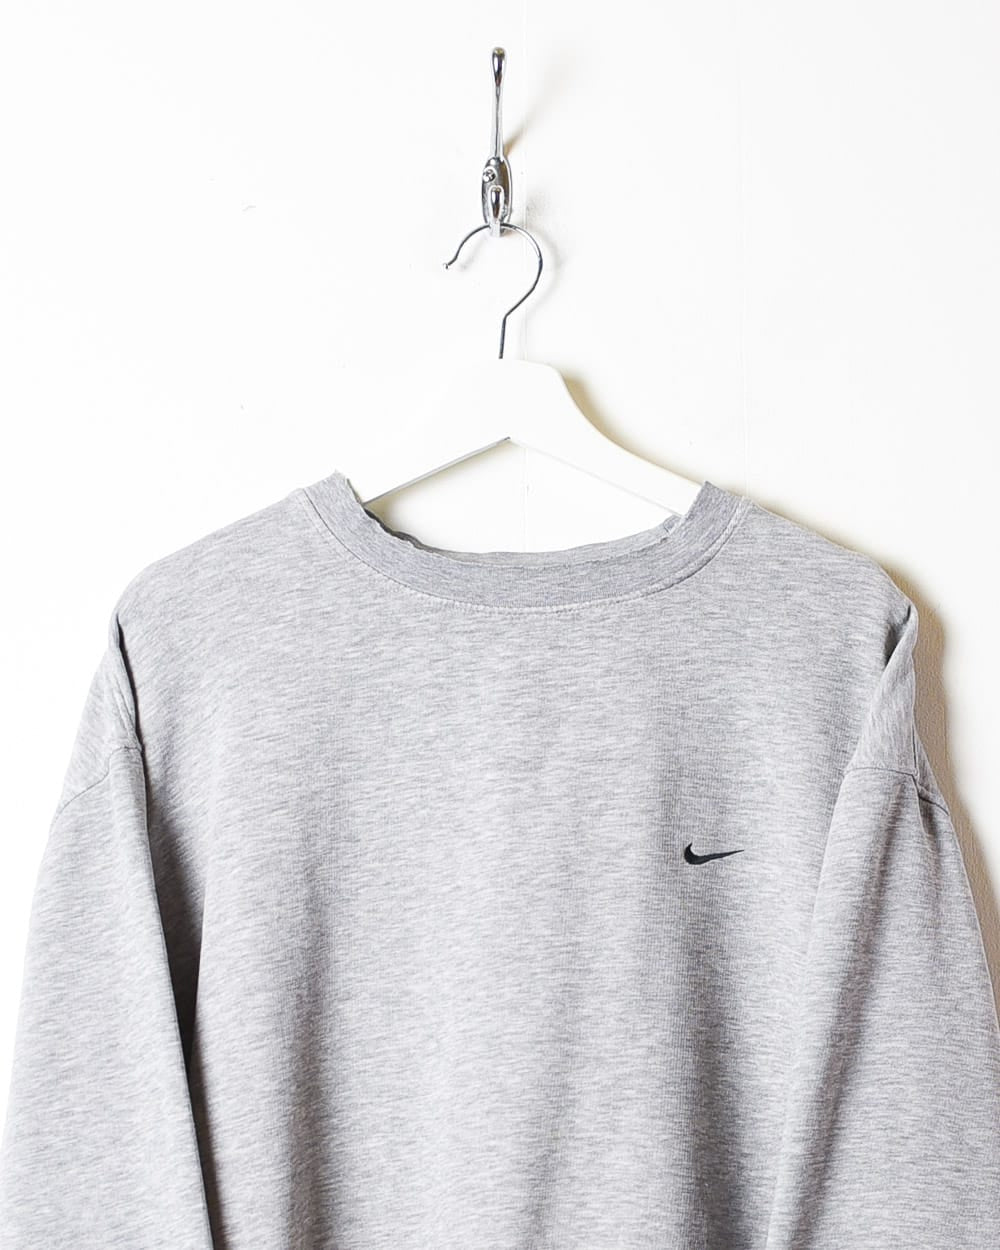 Stone Nike Sweatshirt - XX-Large